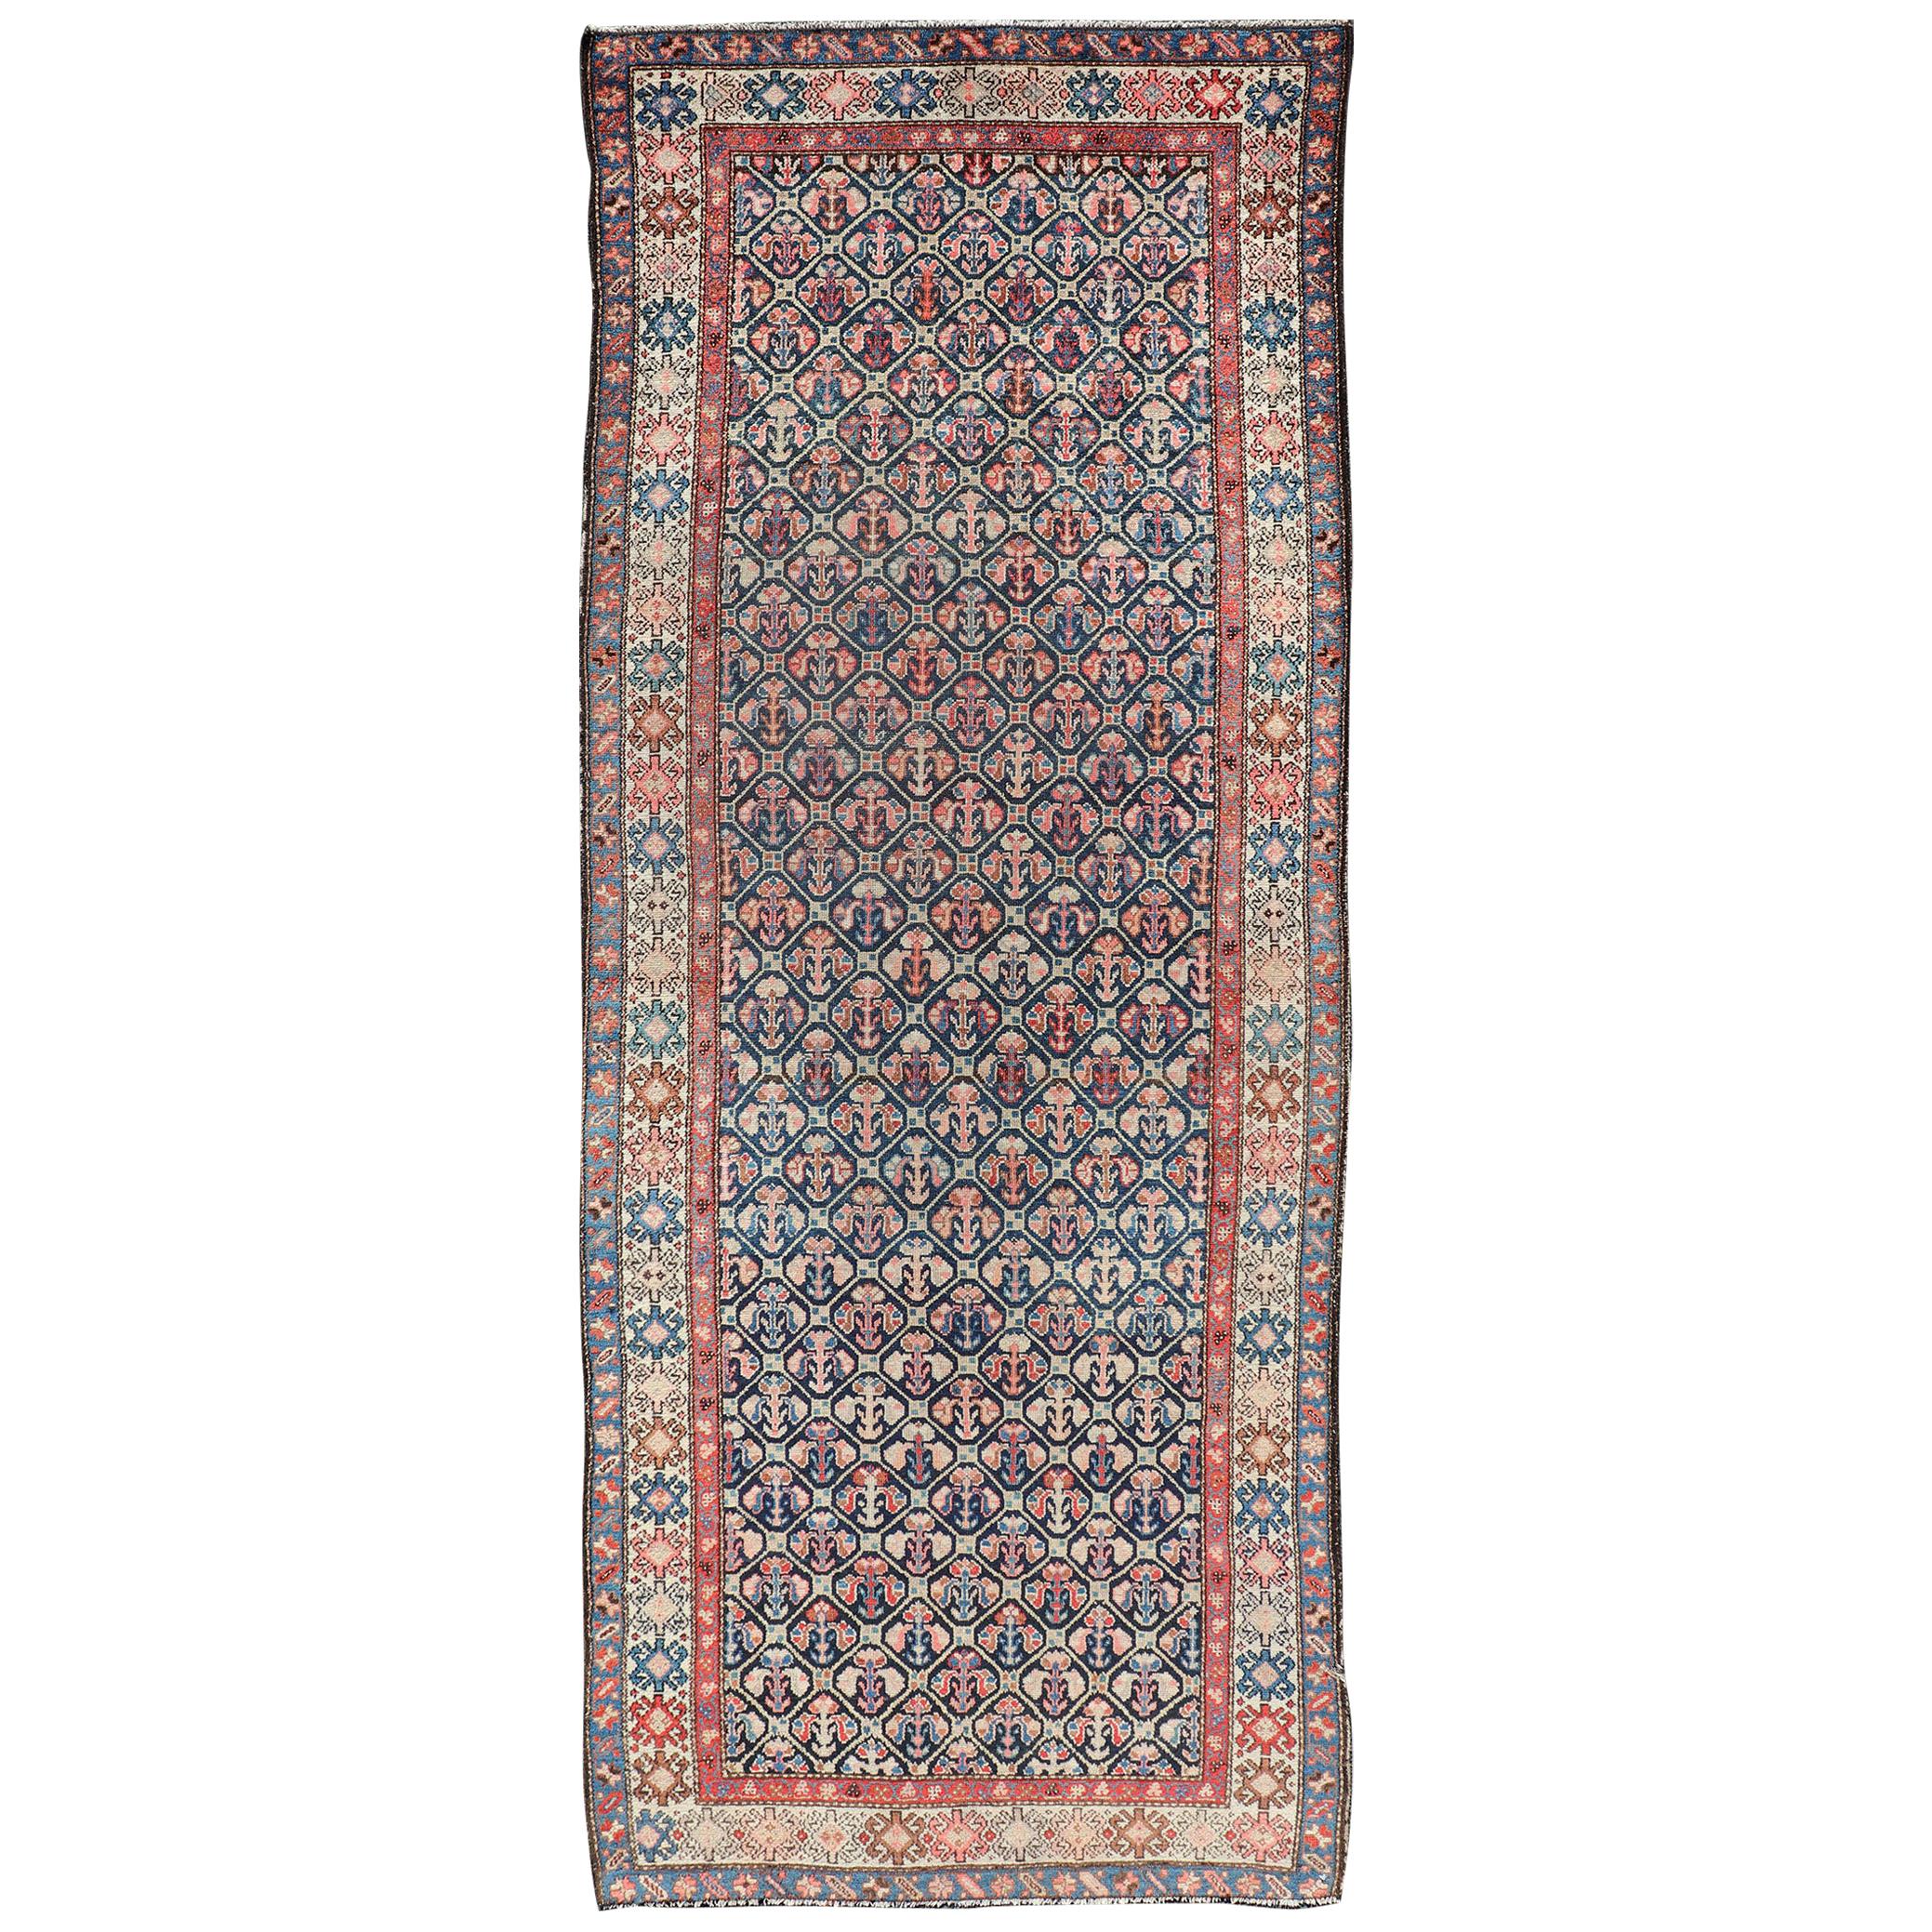 Antiker persischer Stammeskunst- Hamedan-Teppich in Blau, Rot, Braun und Elfenbein